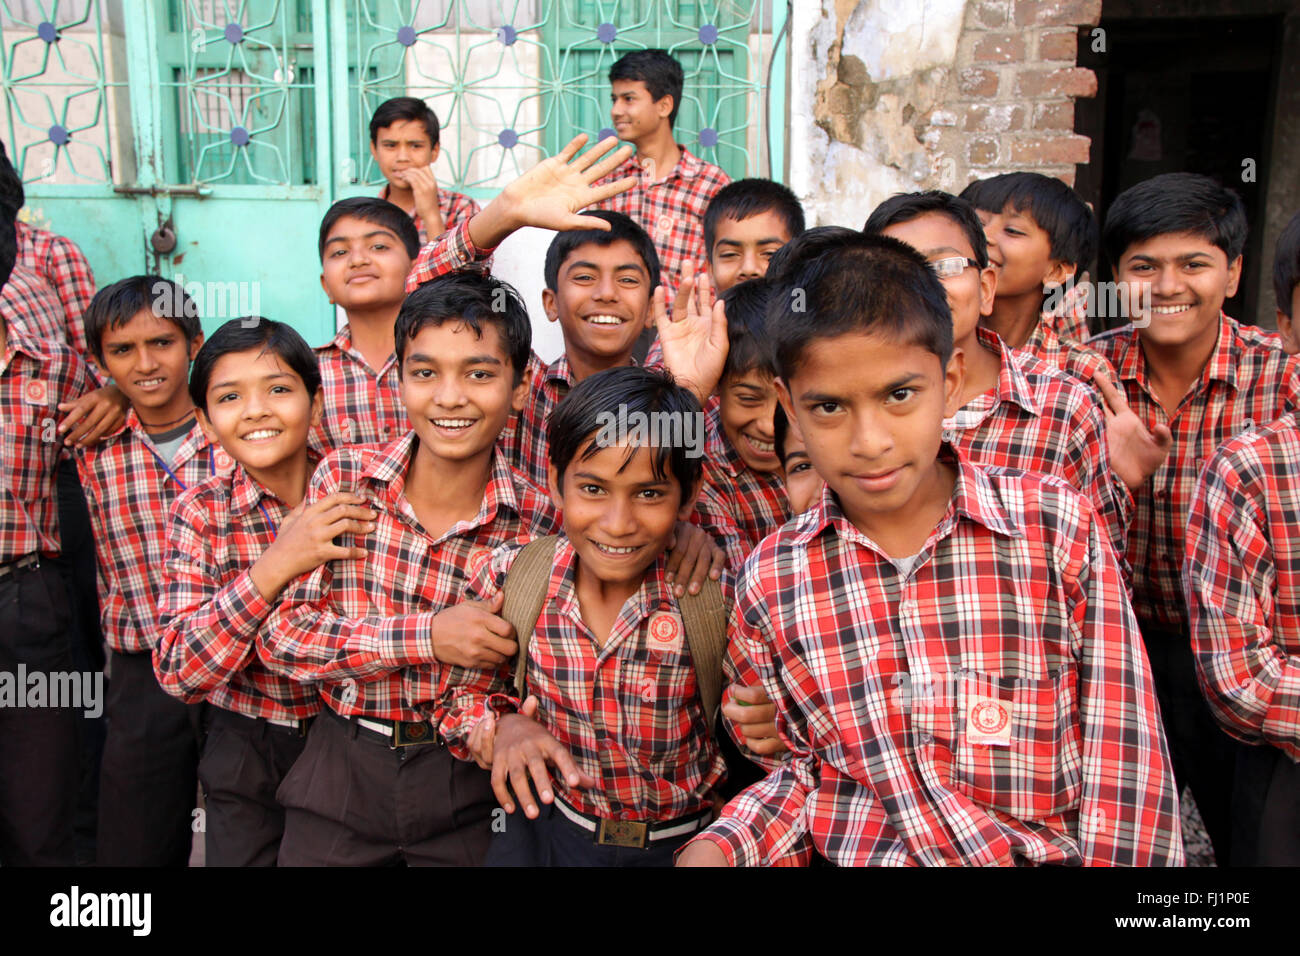 Les garçons de l'école avec le code vestimentaire uniforme de Bhuj, Gujarat, Inde Banque D'Images